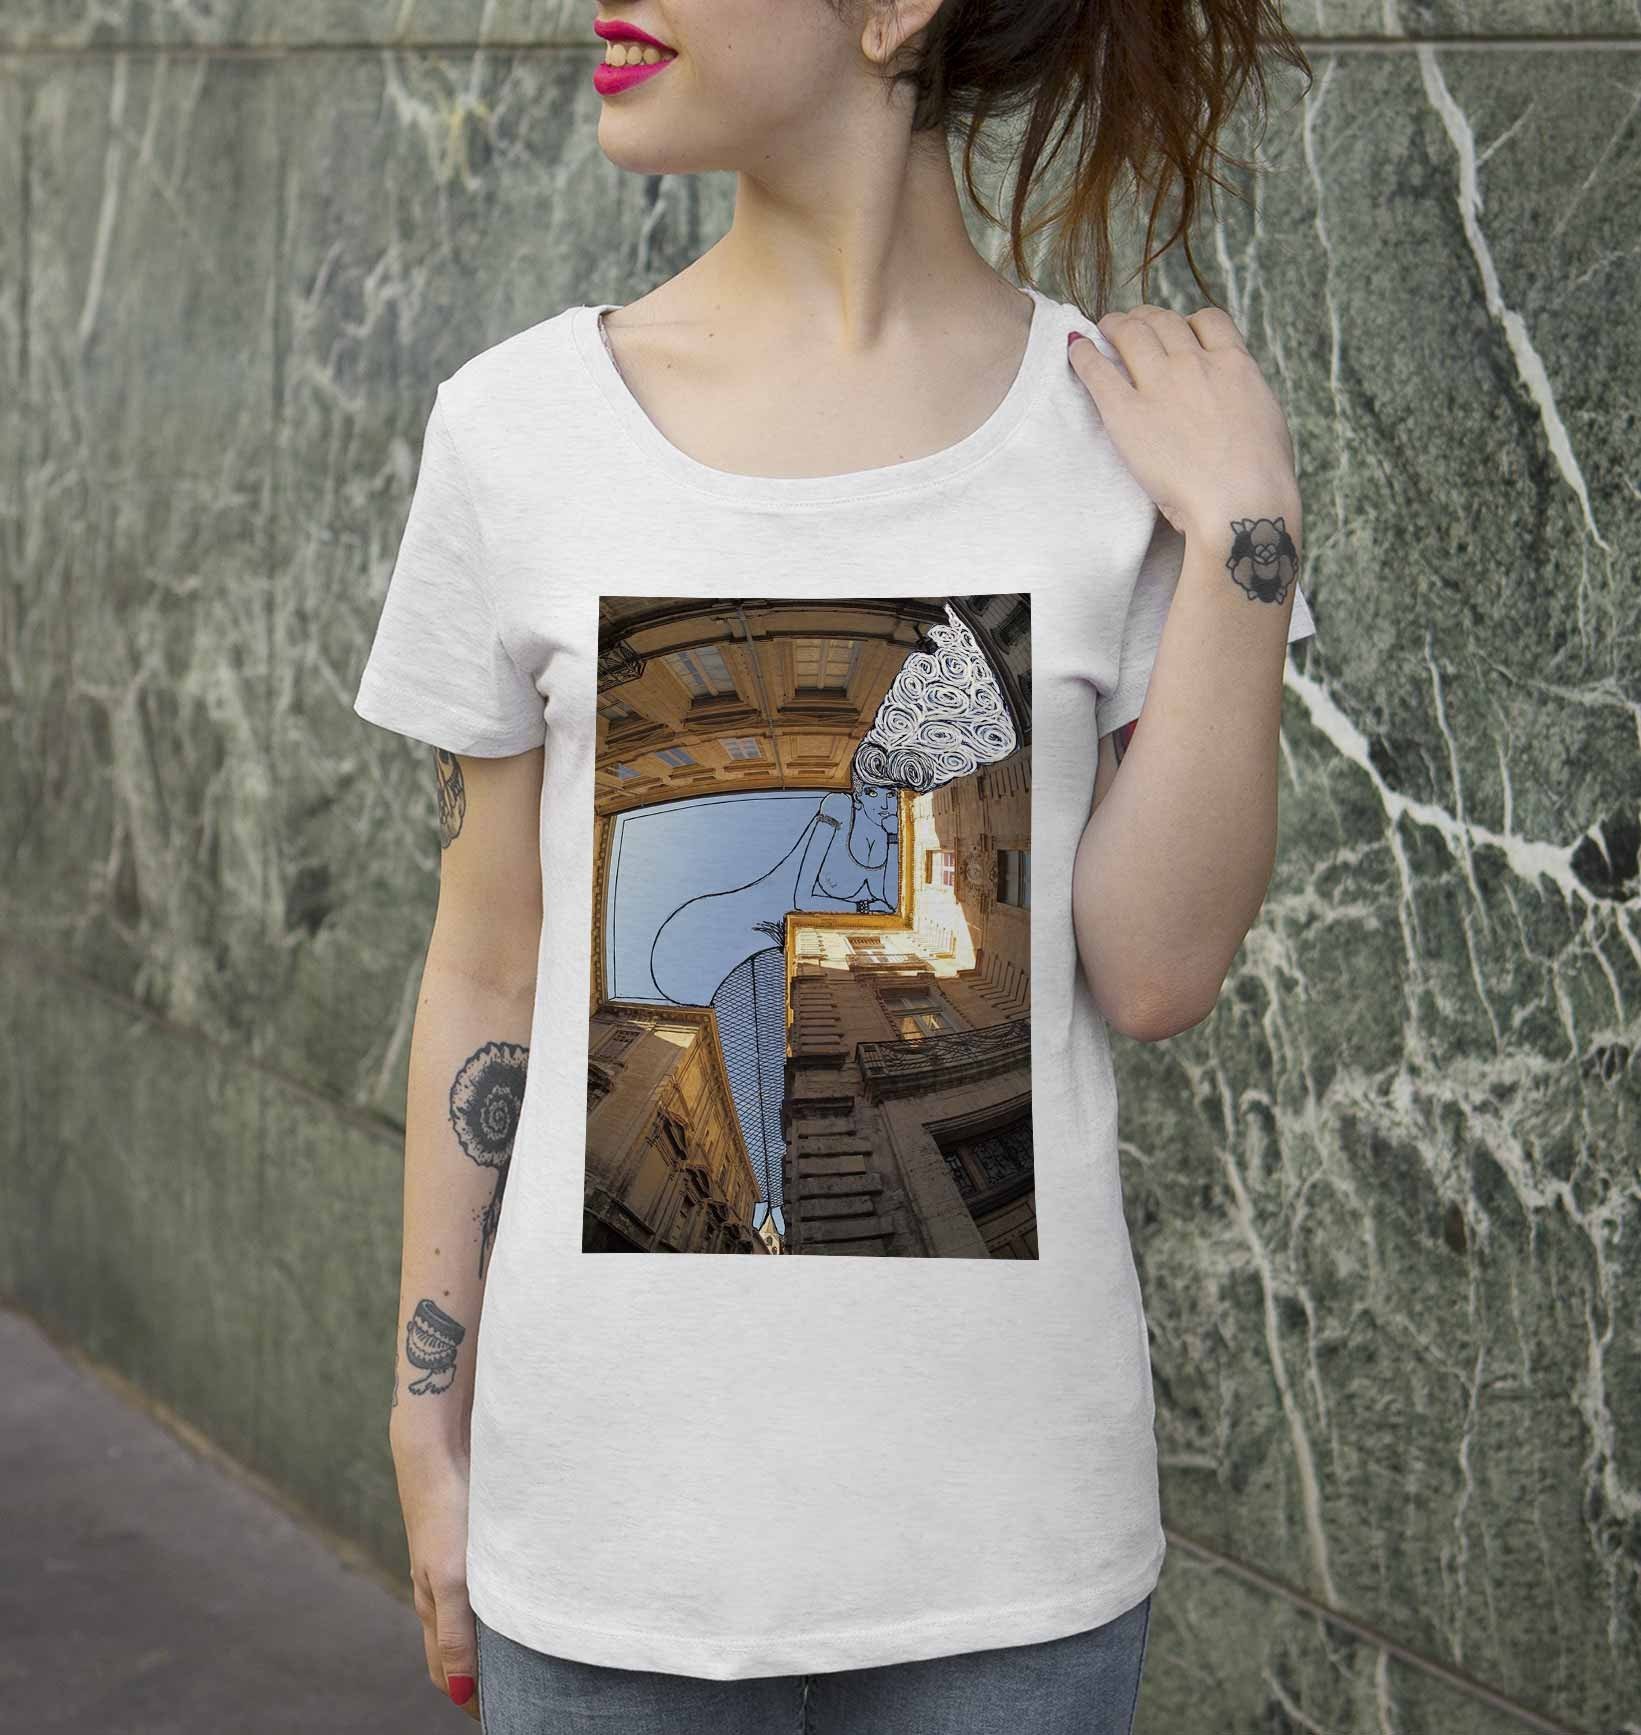 T-shirt Femme Pin-Up D'Avignon de couleur Beige chiné par Thomas Lamadieu